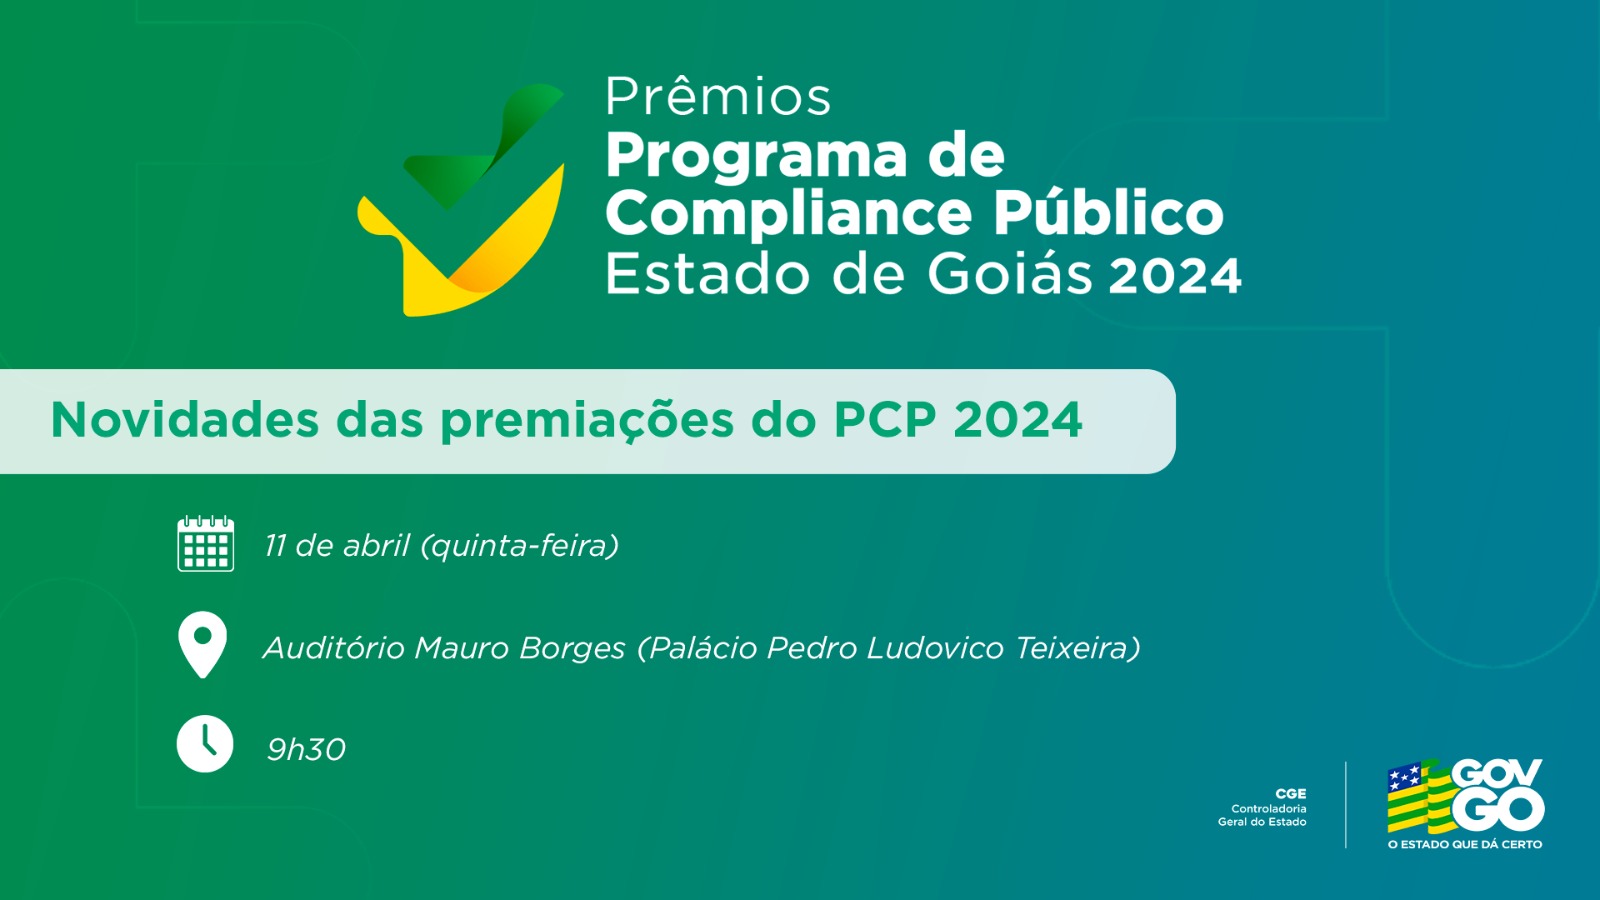 Programa de Compliance Público de Goiás 2024 traz novidades em premiações 